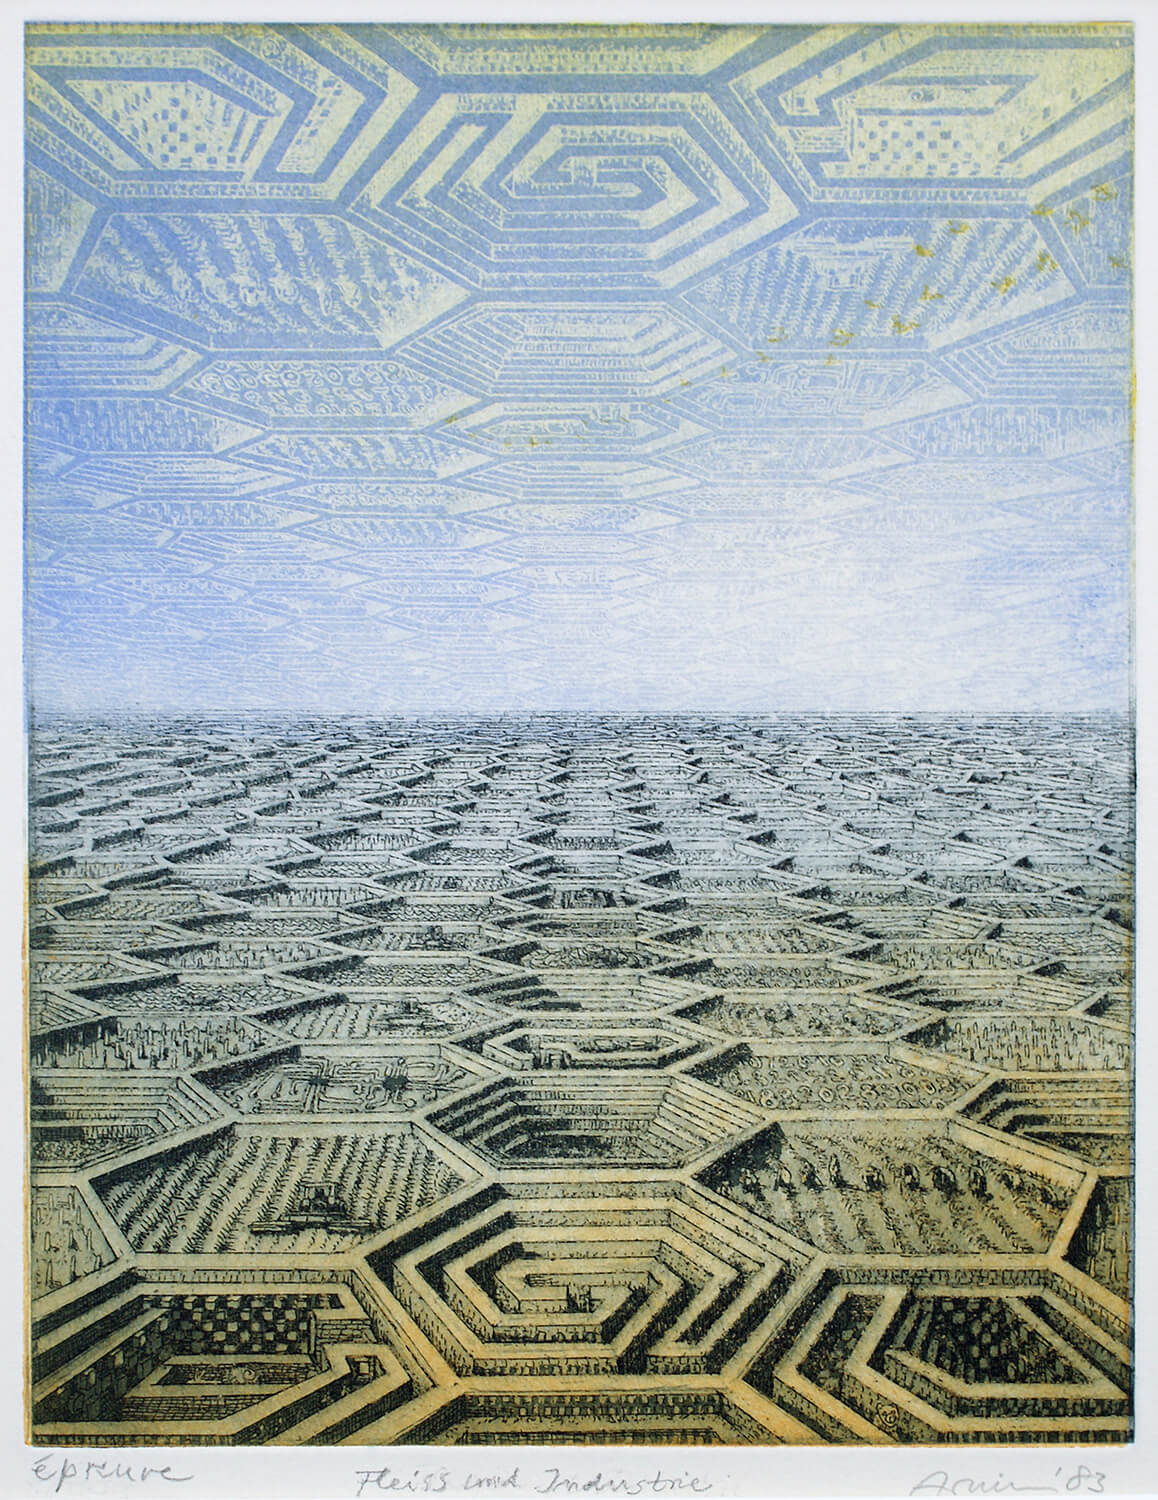 Bettina von Arnim, Fleiß und Industrie, 1983, Farbradierung, Auflage: 20, Bild: 27 x 20,7 cm, Blatt: 47 x 38 cm